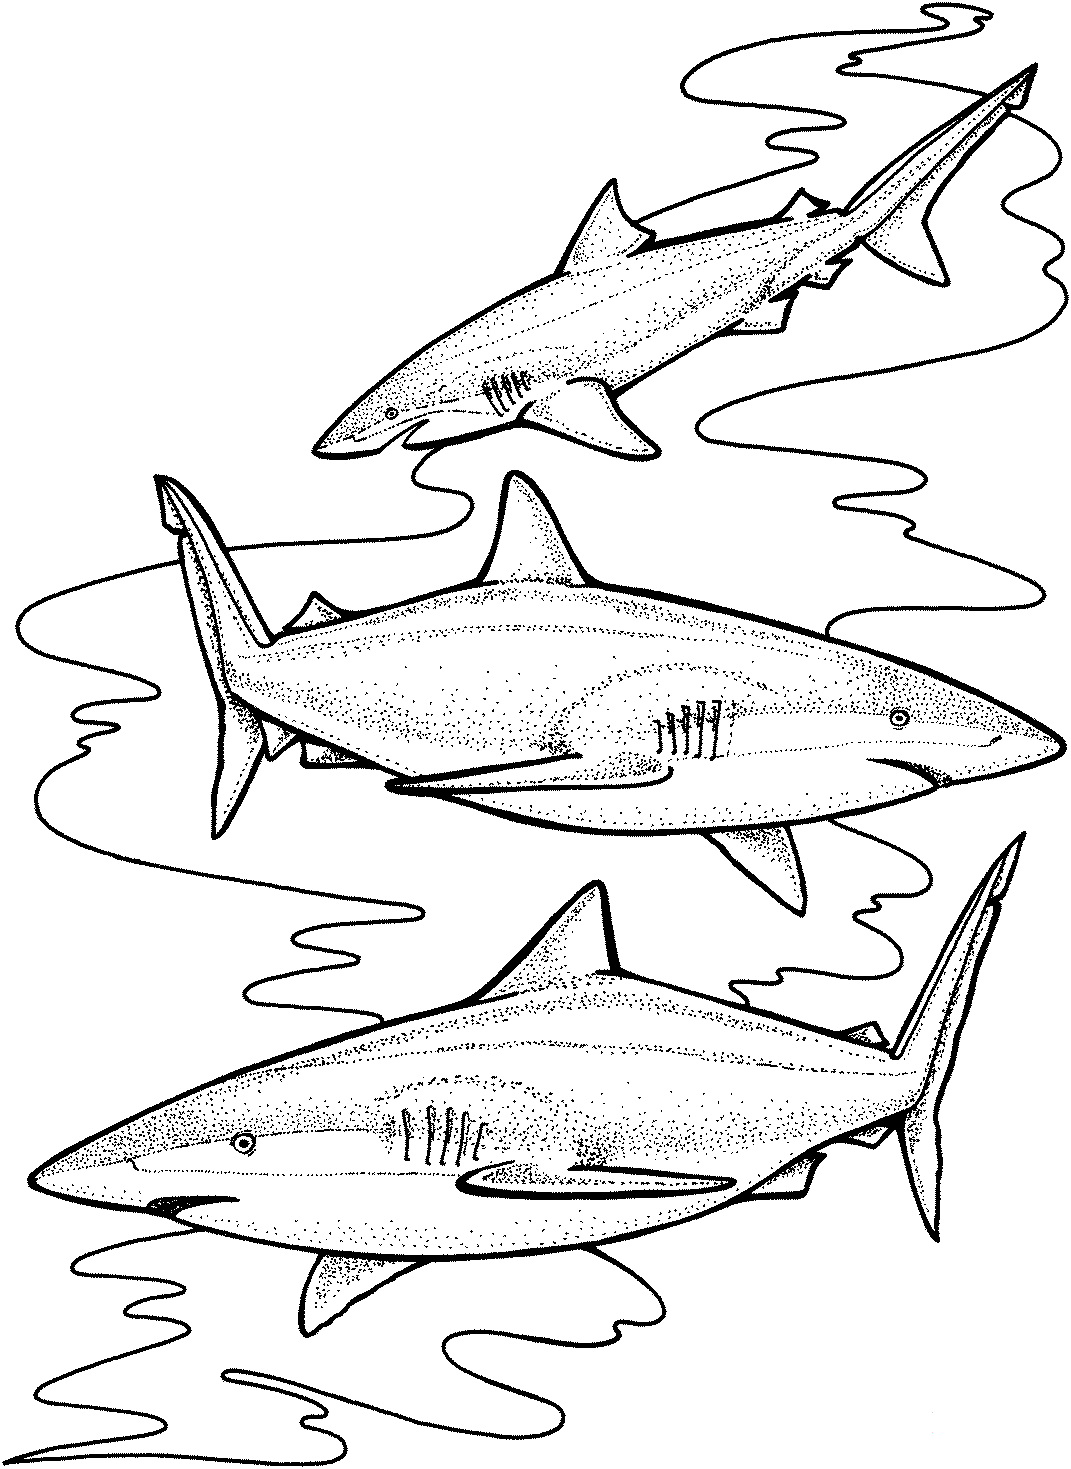 Tre squali tigre probabilmente sono specializzati in alcune prede altamente disponibili di Shark